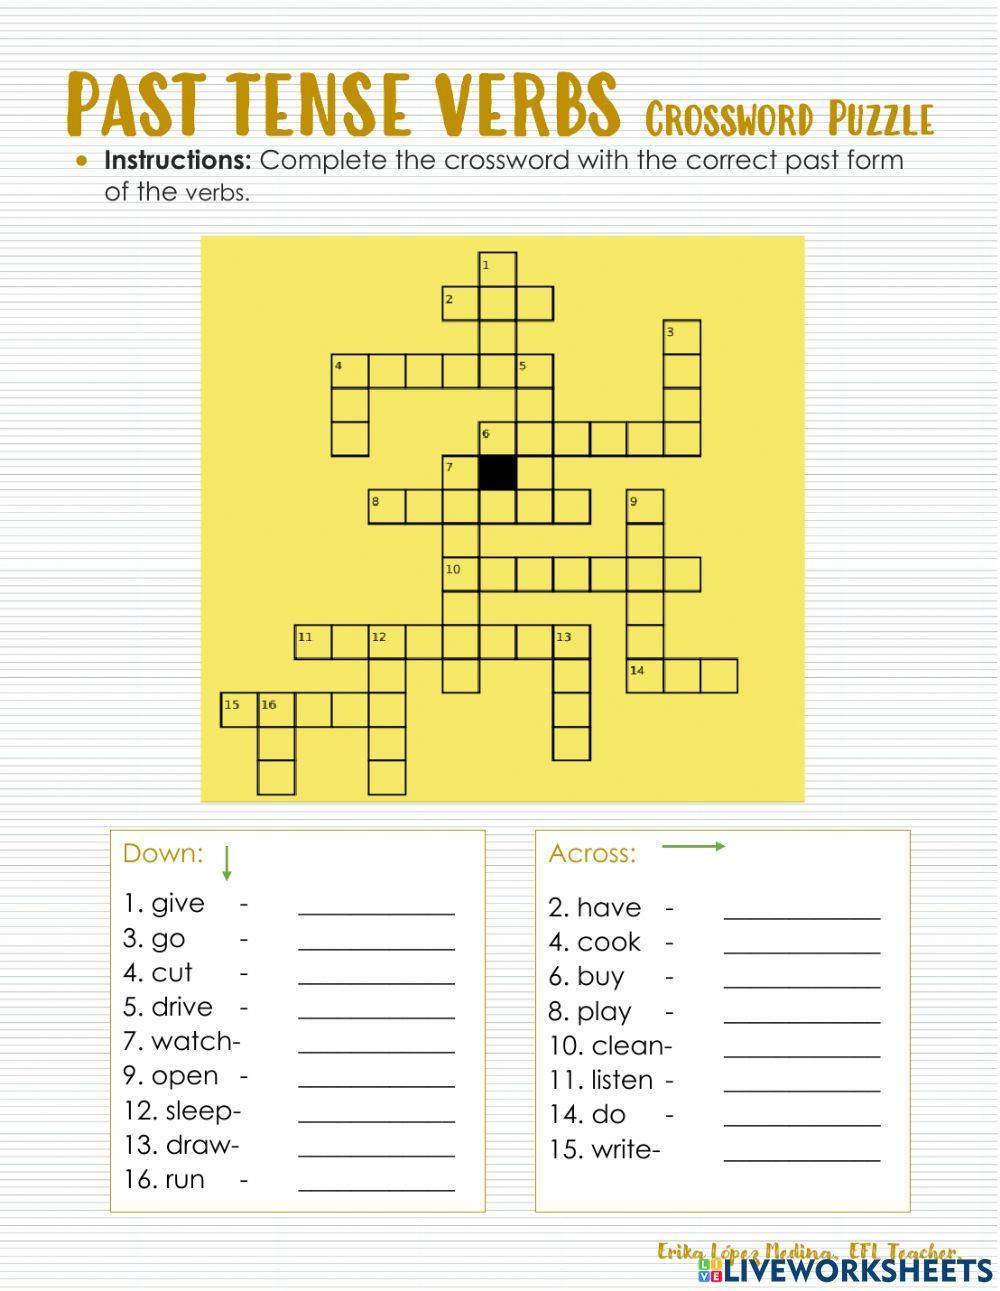 Past Tense Verbs Crossword Puzzle worksheet | Live Worksheets